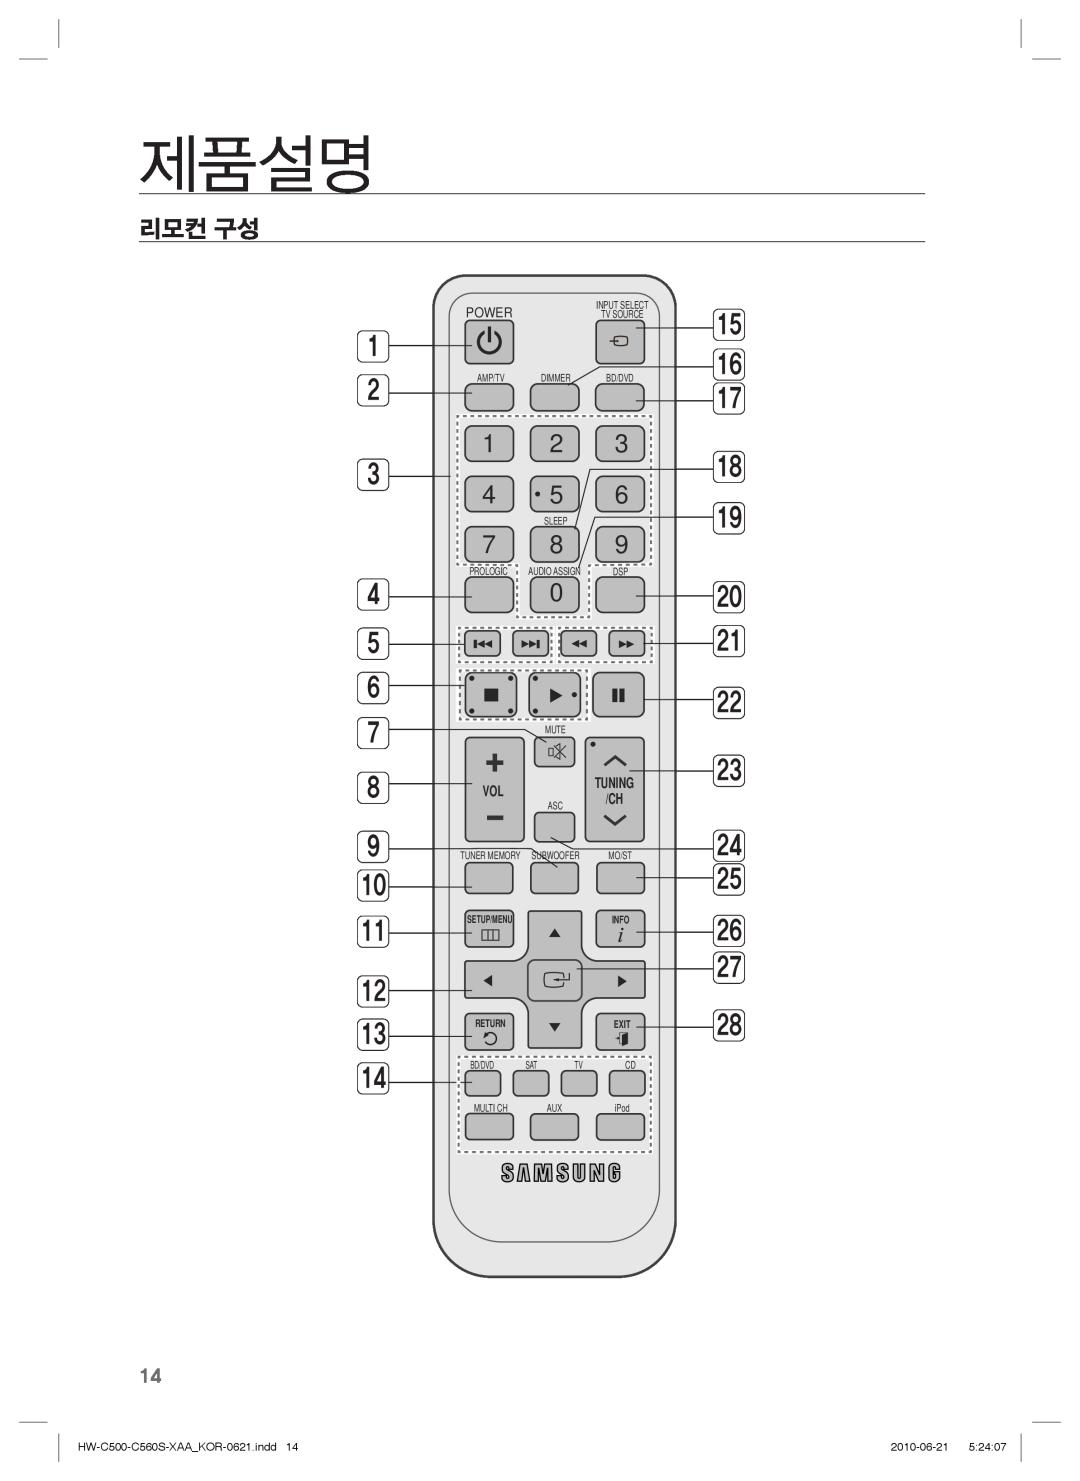 Samsung manual 리모컨 구성, 제품설명, 1 2 3 4 5 6, HW-C500-C560S-XAA KOR-0621.indd14, 2010-06-21 